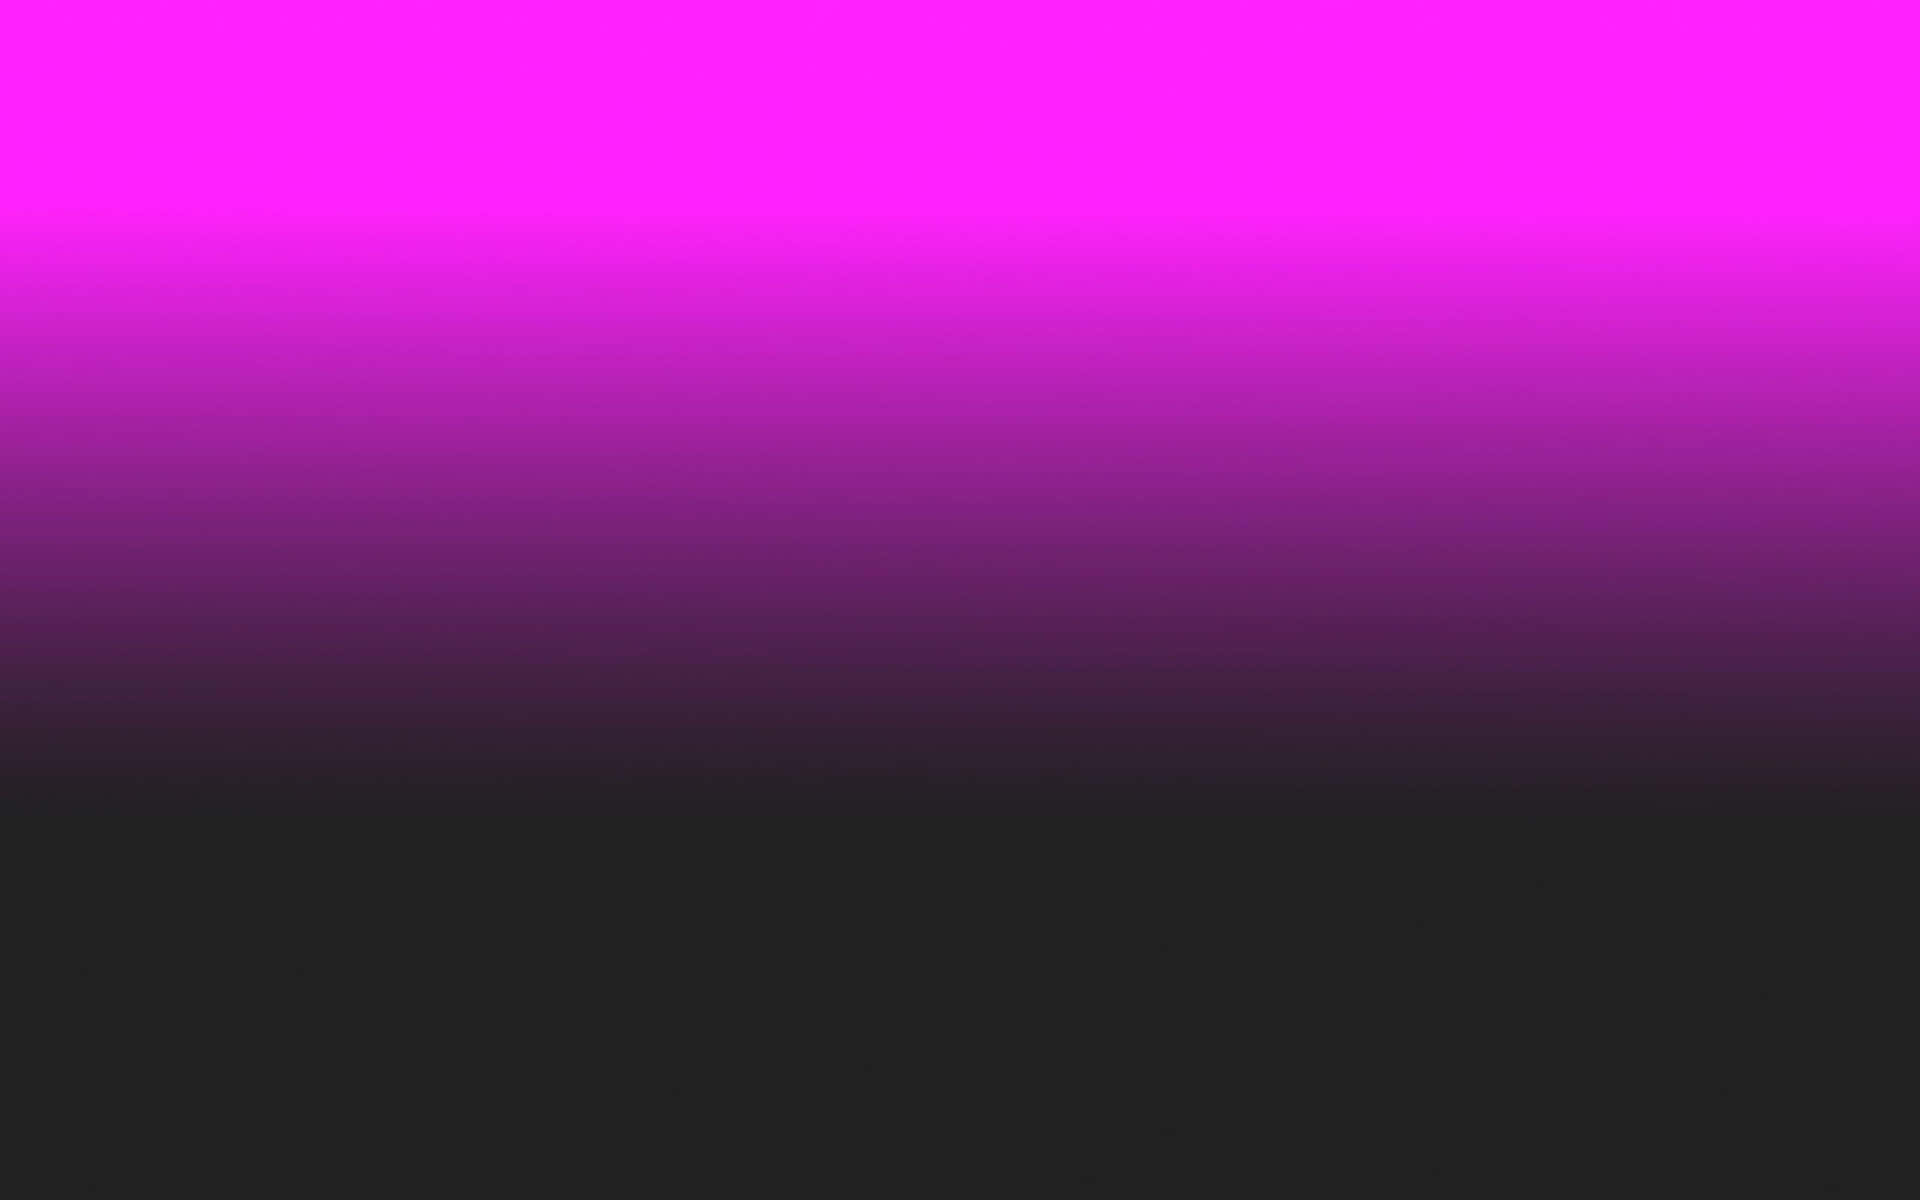 Einefesselnde Kombination Aus Kontrastierenden Farben - Pink Und Schwarz. Wallpaper